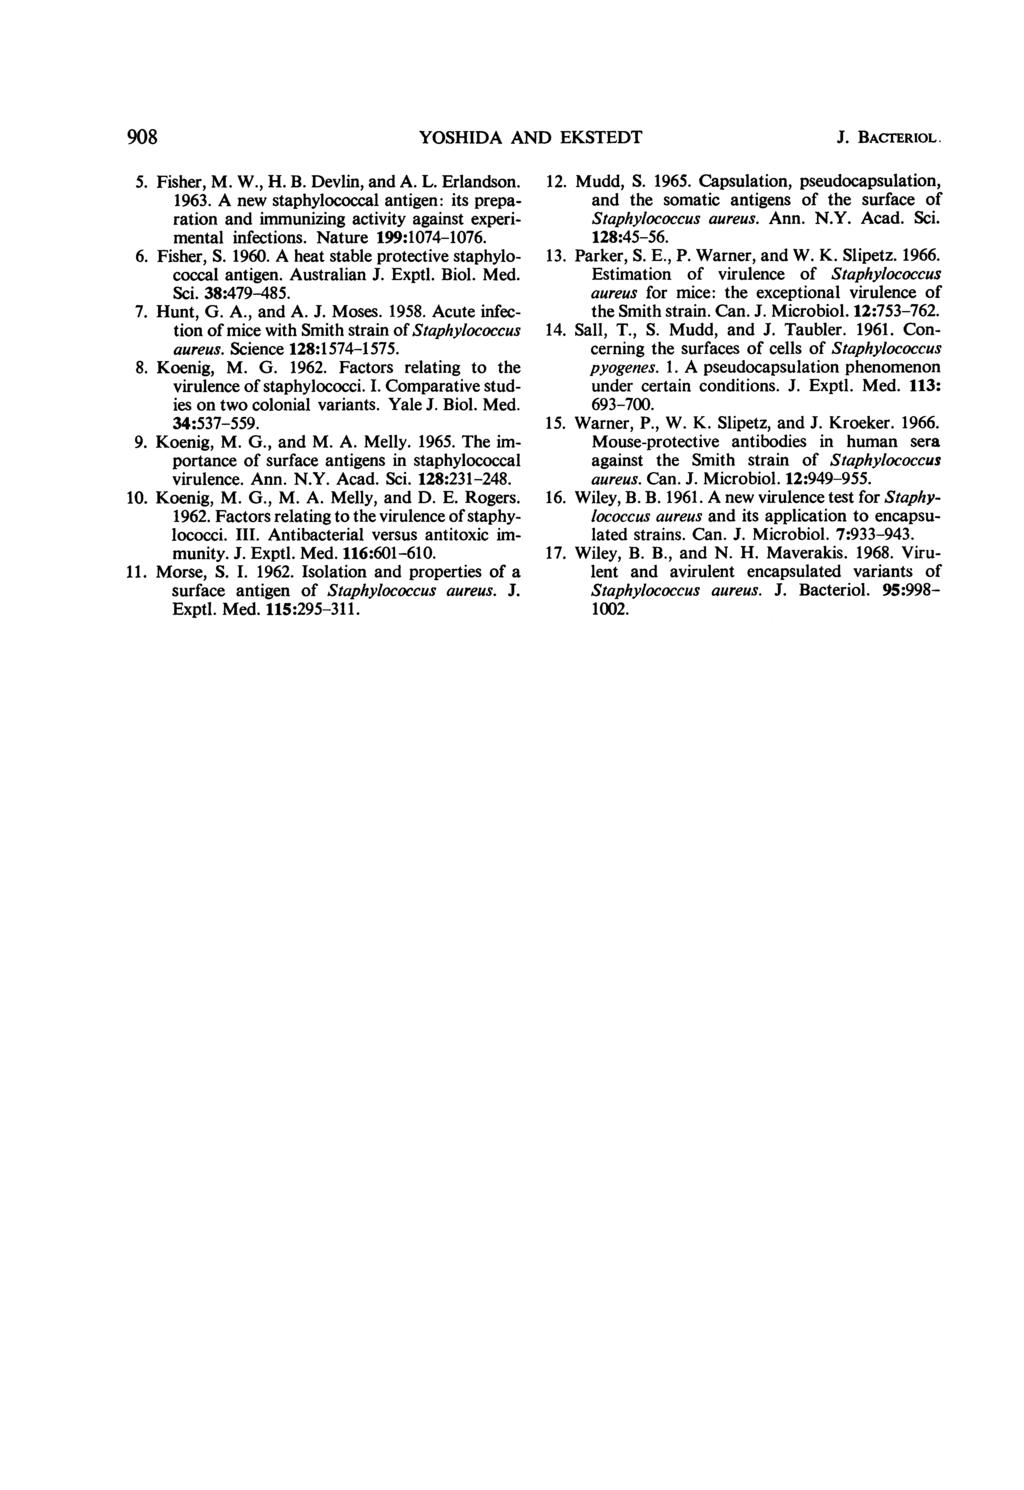 908 YOSHIDA AlN]D EKSTEDT J. BACTERIOL. 5. Fisher, M. W., H. B. Devlin, and A. L. Erlandson. 1963.